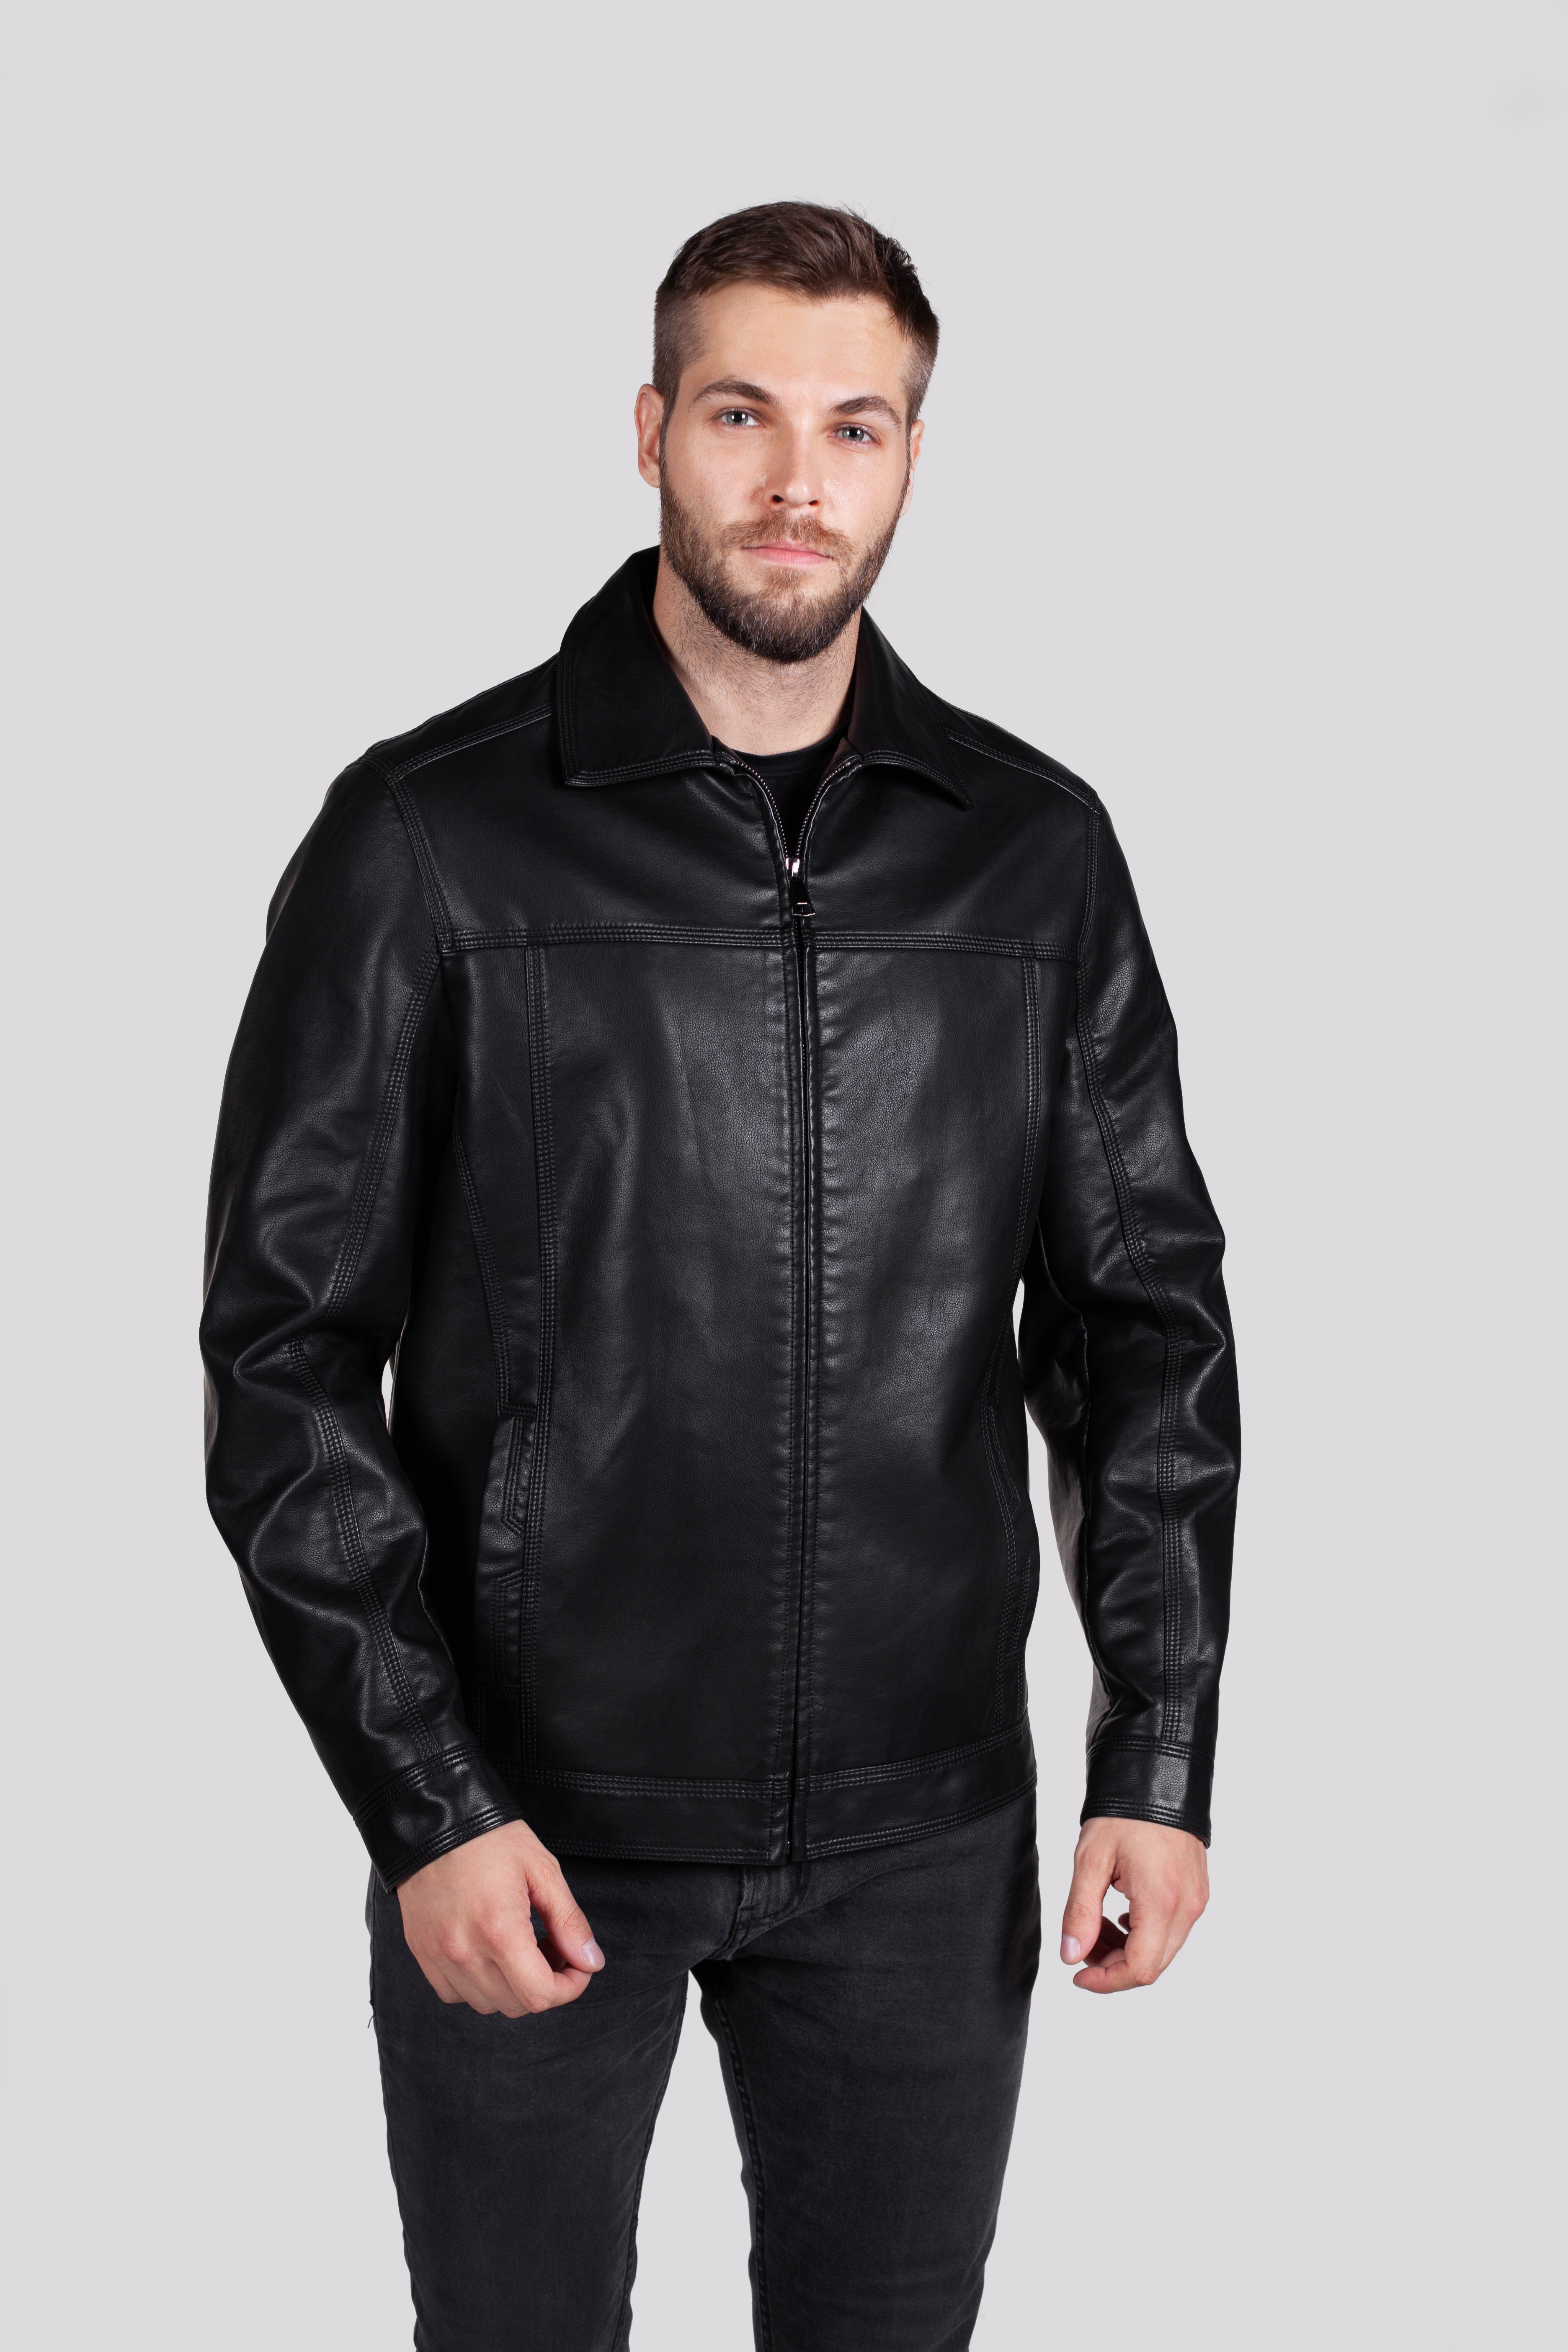 Кожаная куртка мужская RATSKA 631 черная 70 RU